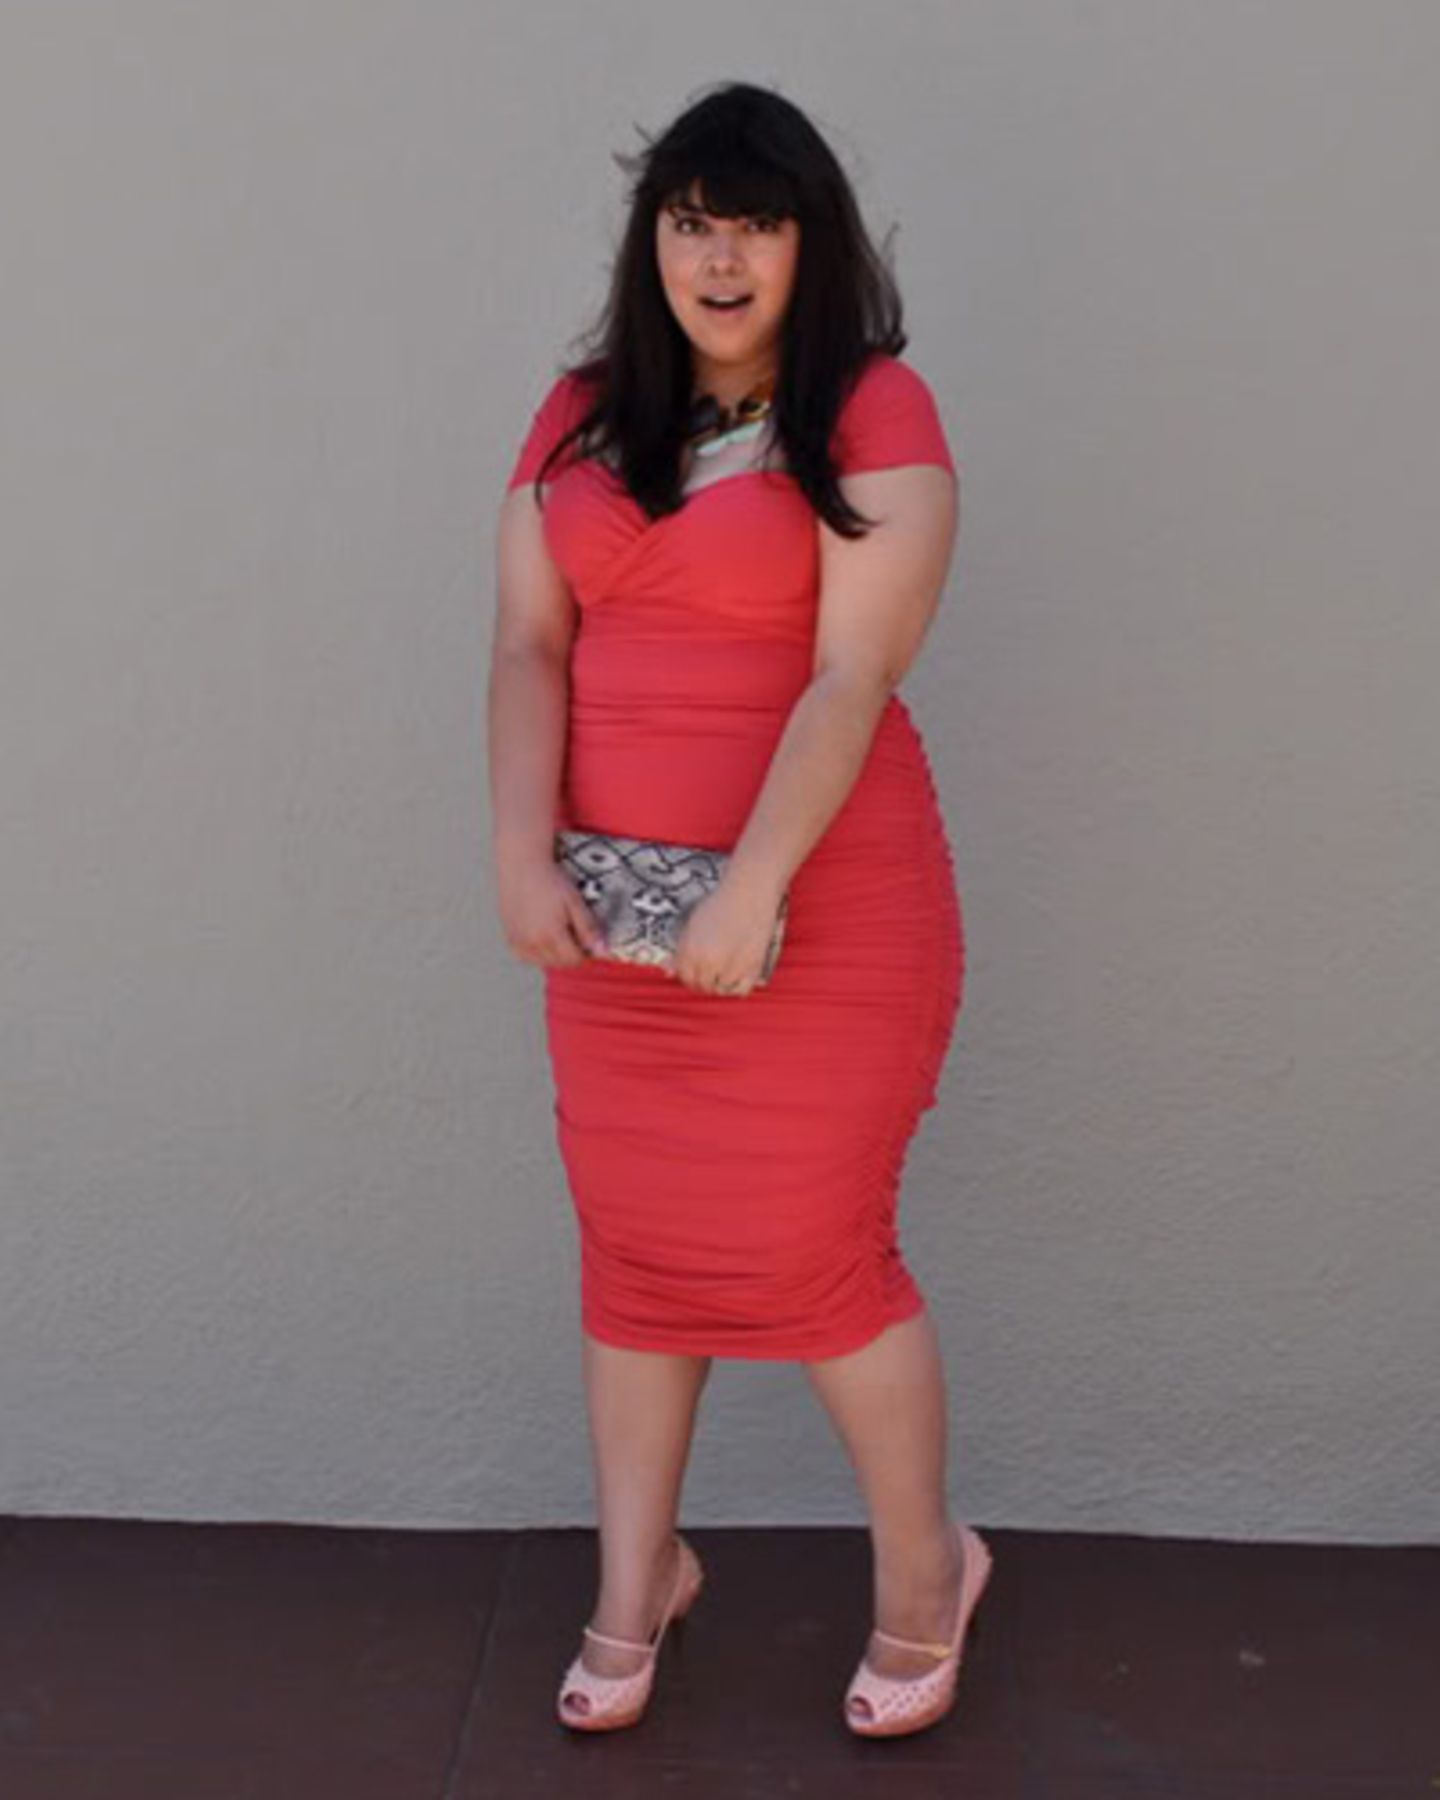 Der Look der amerikanischen Bloggerin Jay Miranda ist verspielt und feminin. Sie zeigt eben gern, was sie hat - und sieht dabei so bezaubernd aus wie in diesem figurbetonten korallfarbenen Kleid mit Raffungen und Wickeloptik.